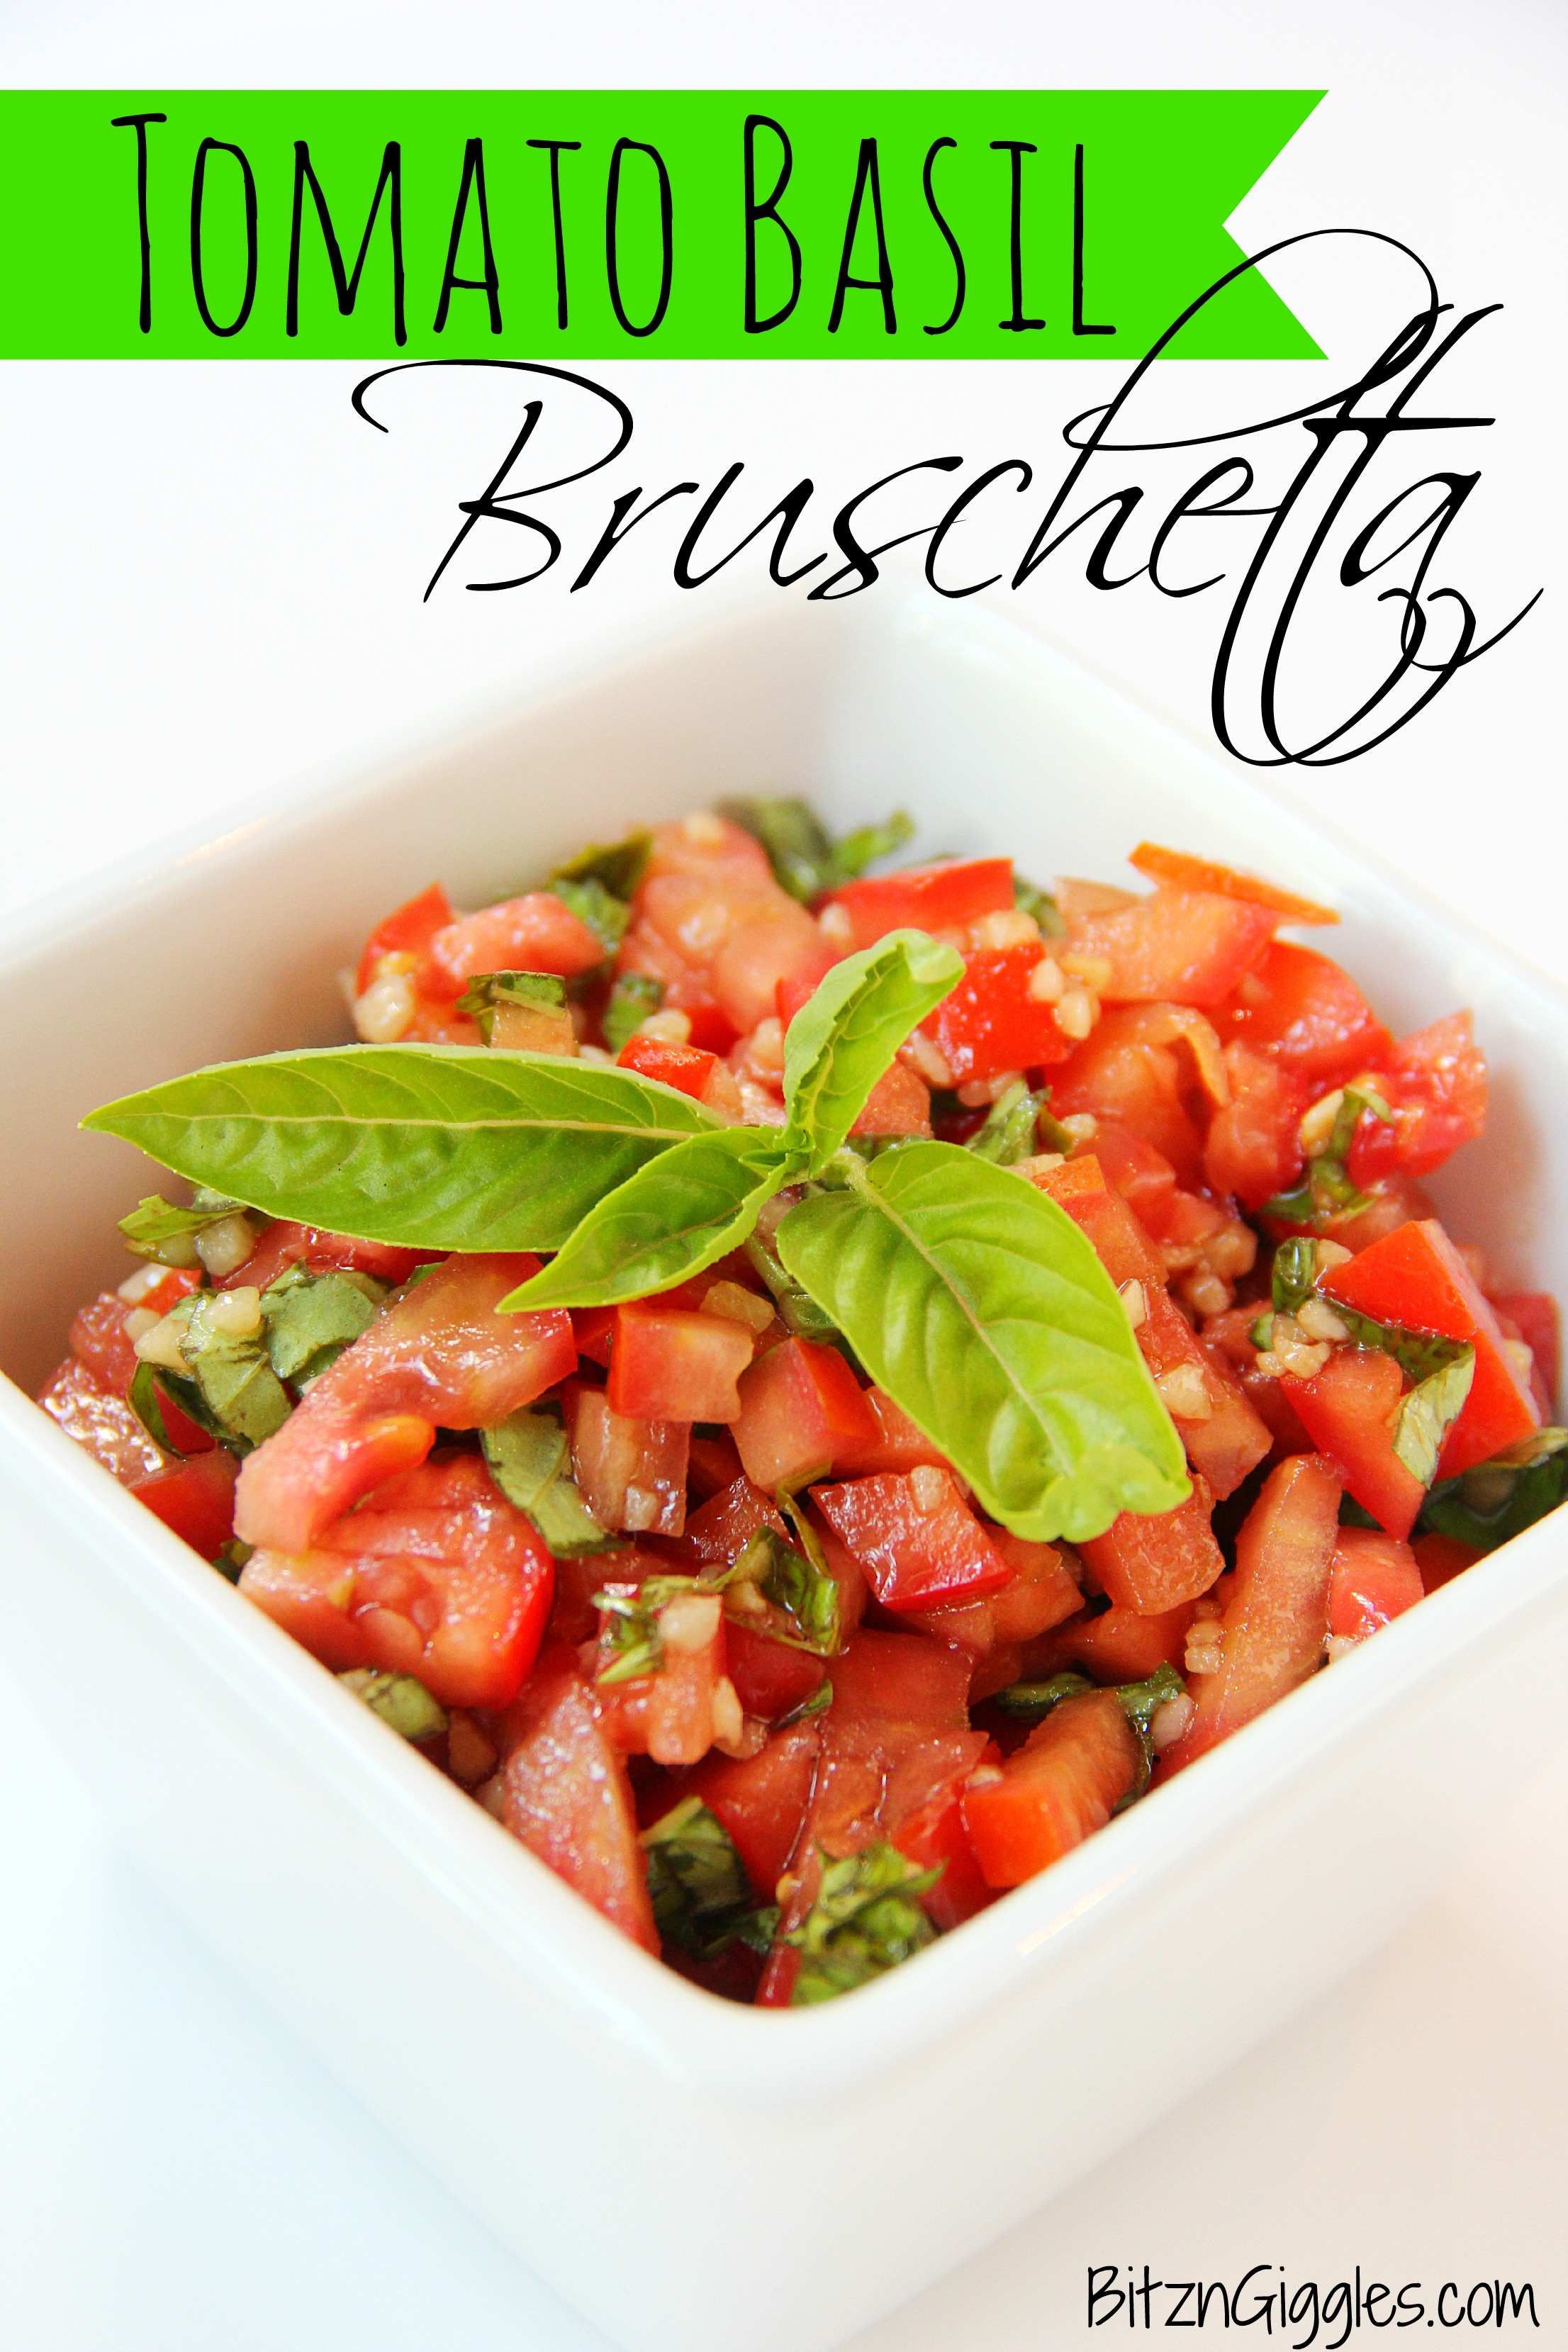 Tomato Basil Bruschetta - Bitz & Giggles